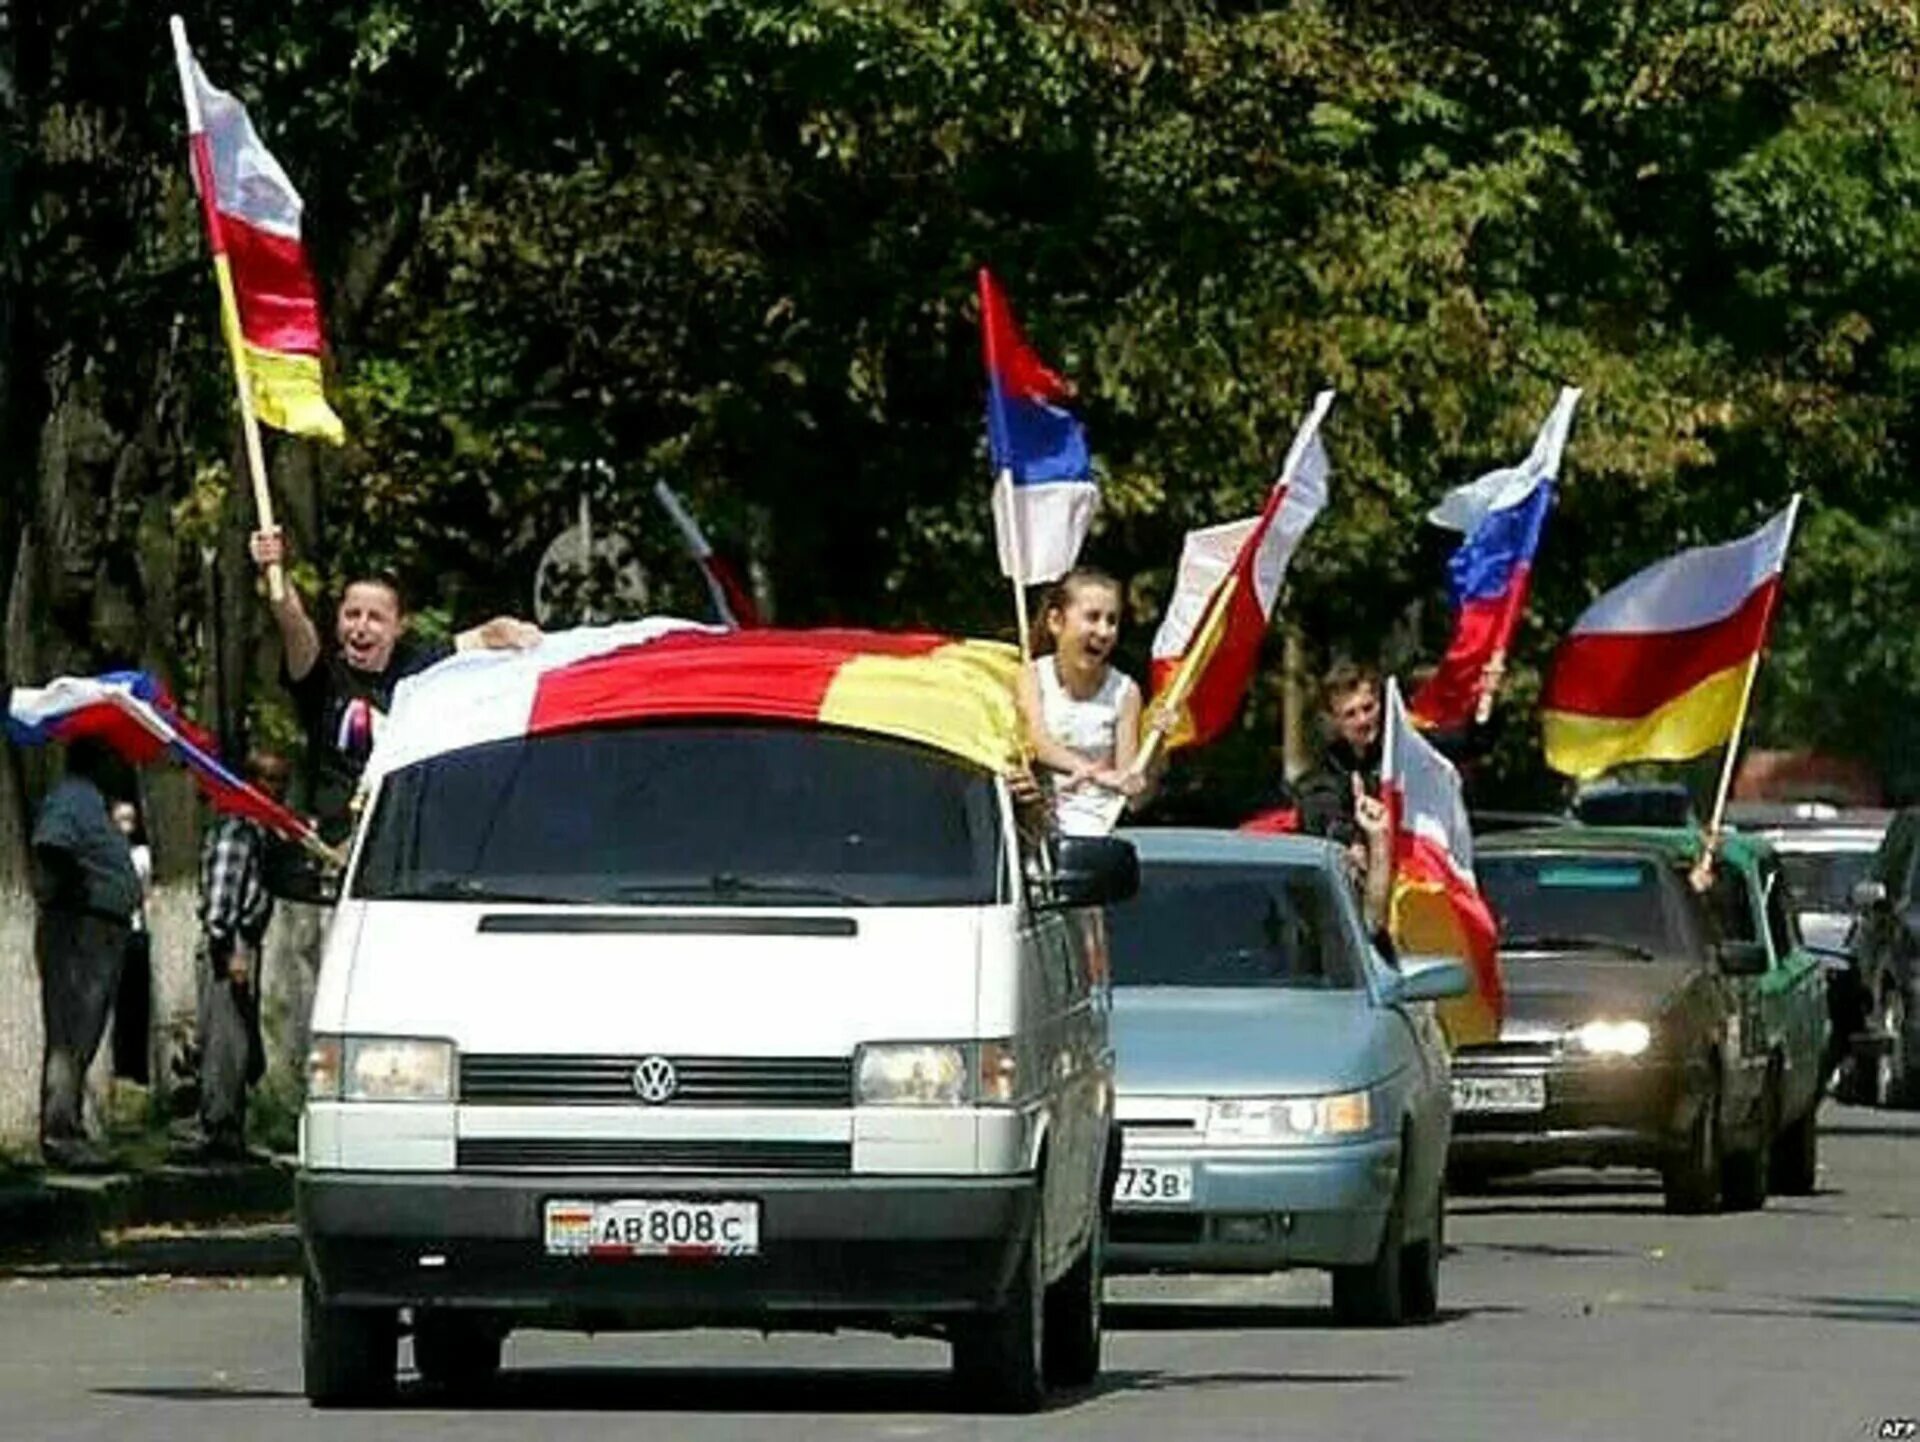 2008 г осетия. 26 Августа 2008 Южная Осетия. 26 Августа 2008 независимость Южной Осетии. 17 Июля референдум в Южной Осетии. Признание Россией независимости Абхазии и Южной Осетии.